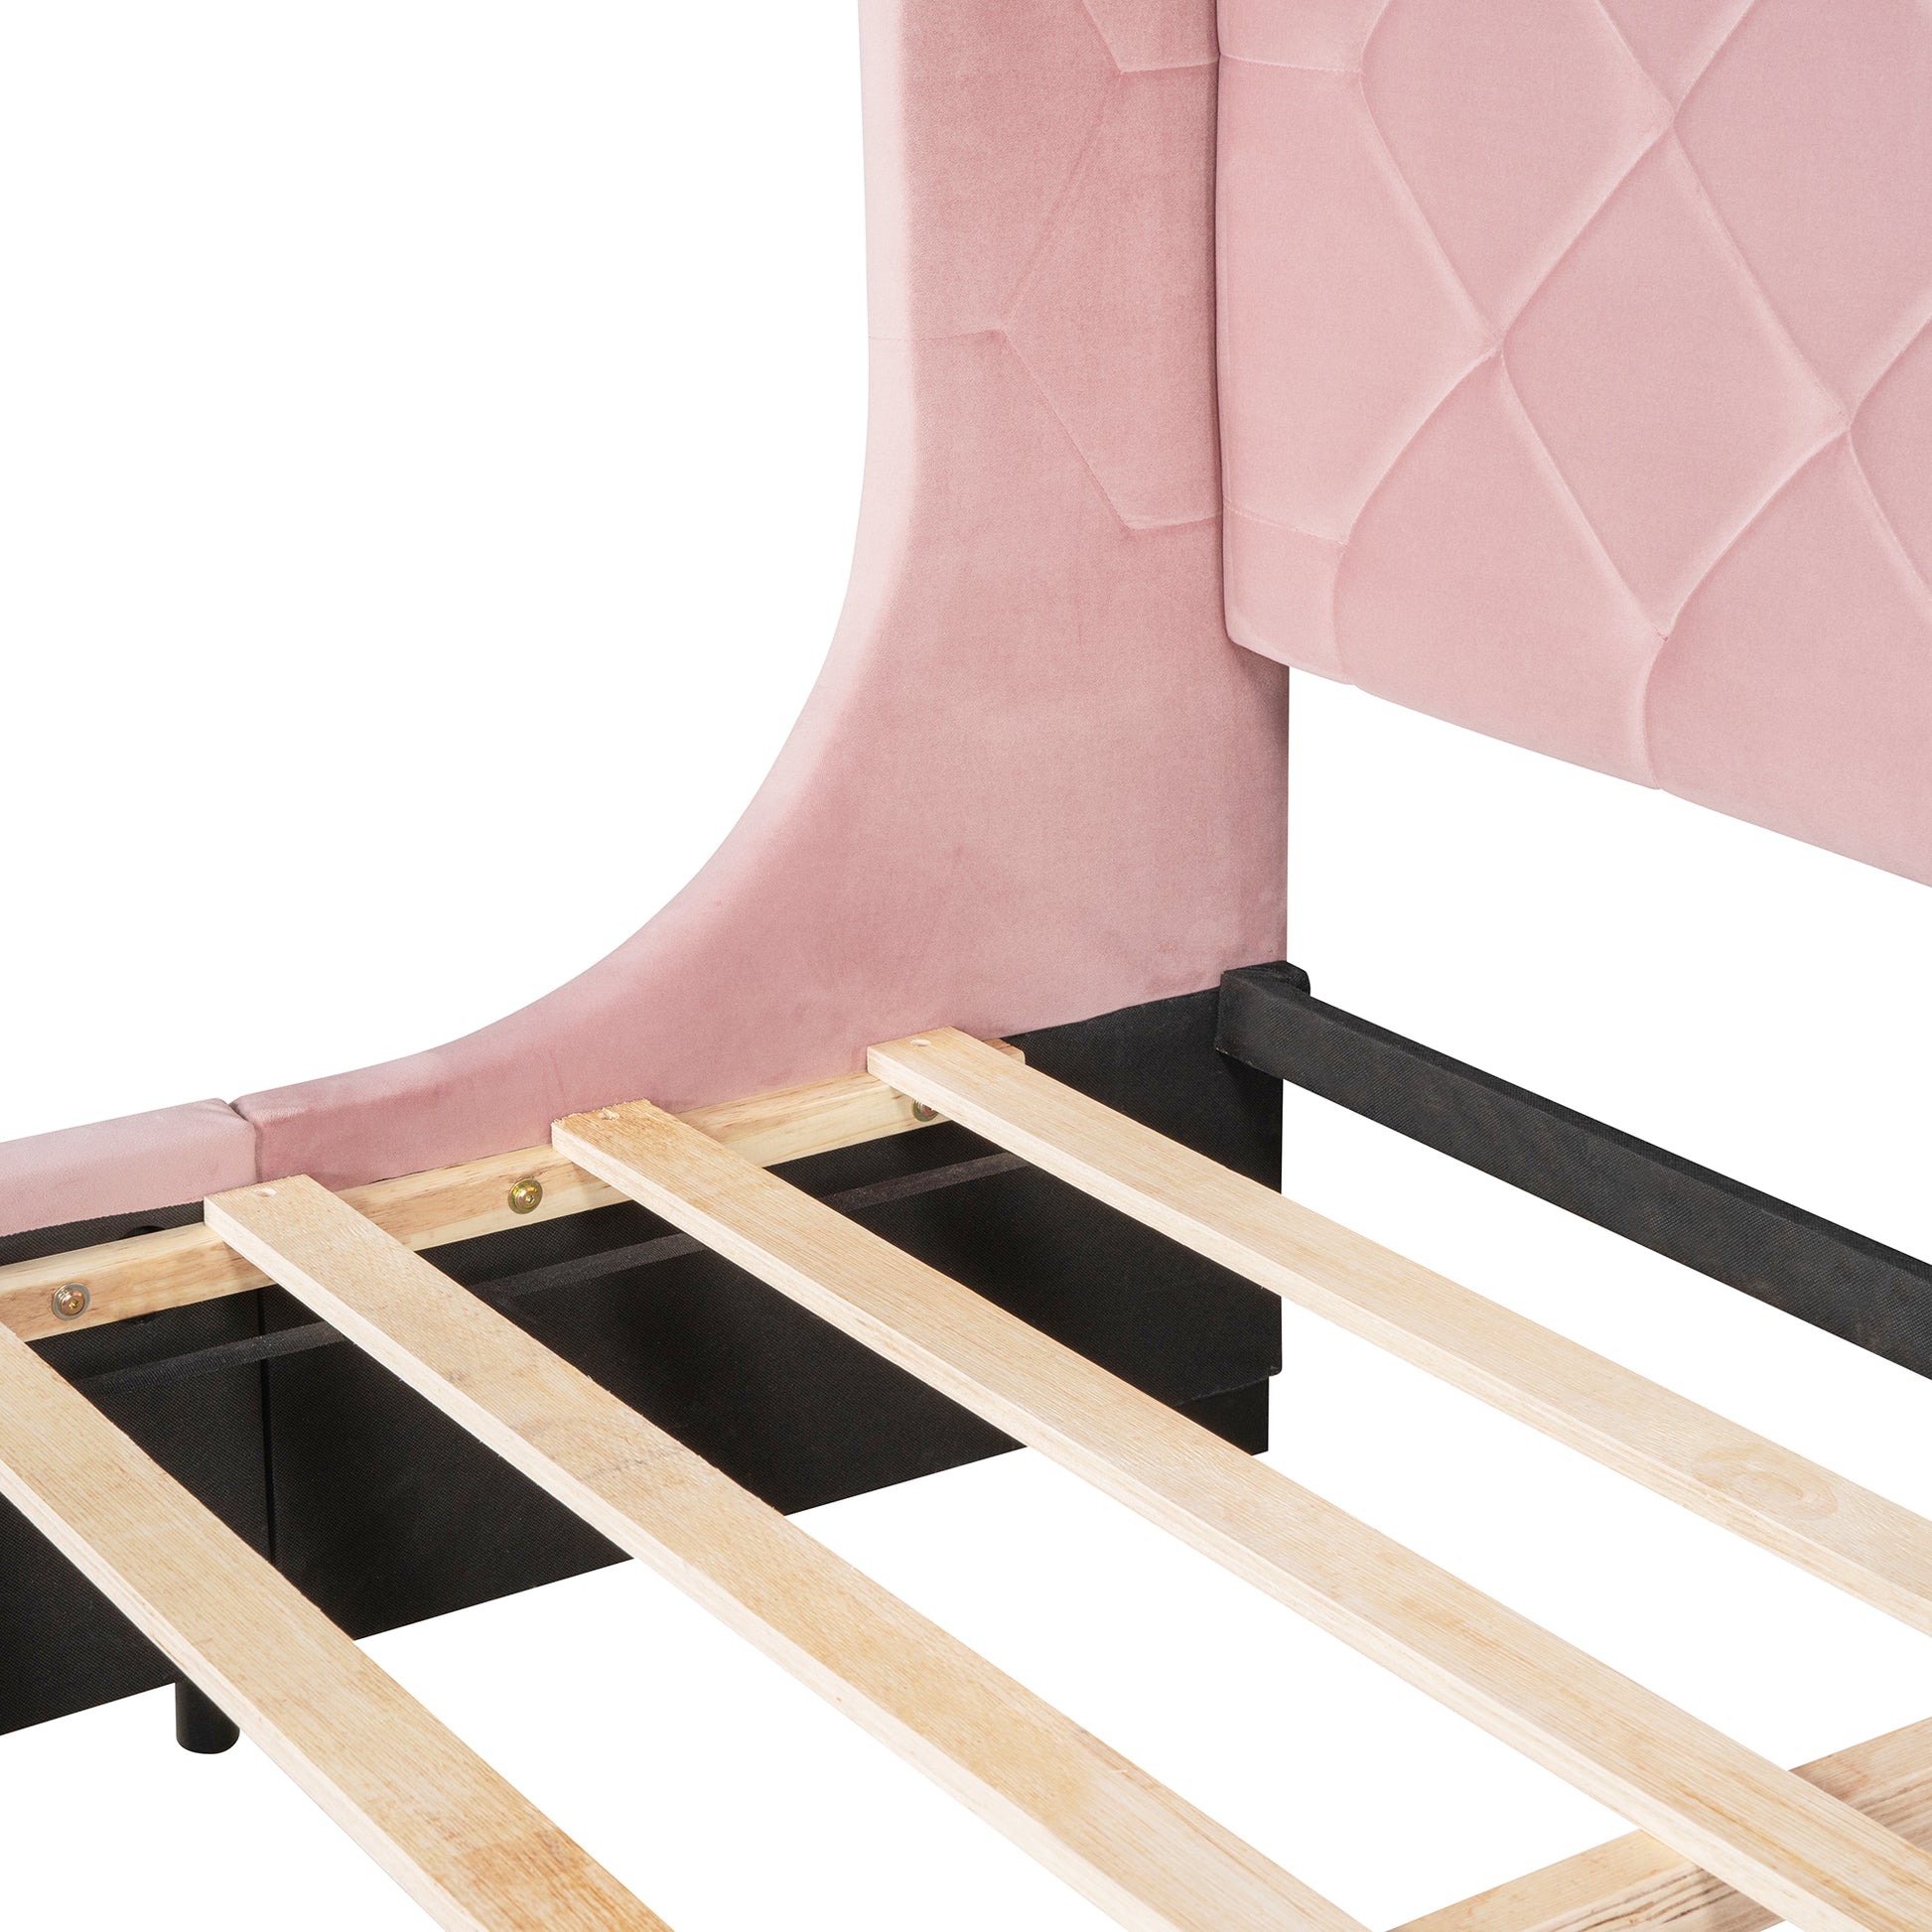 Queen Size Storage Bed Velvet Upholstered Platform Bed pink-upholstered